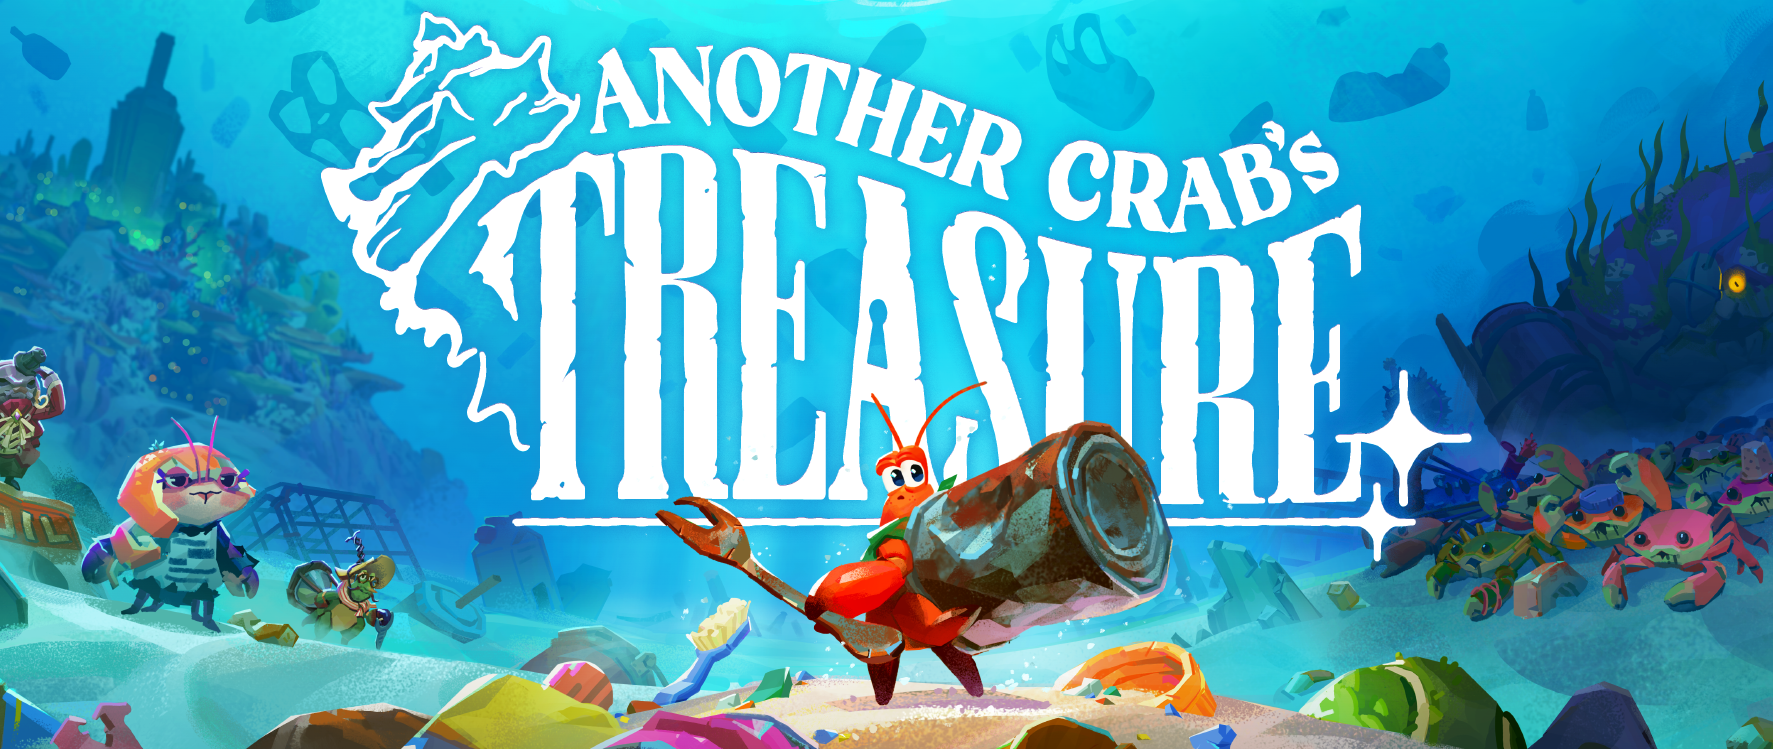 Another Crabs Treasure № 6 - Исследуем морской лес! Теперь мы настоящий Хищник!)